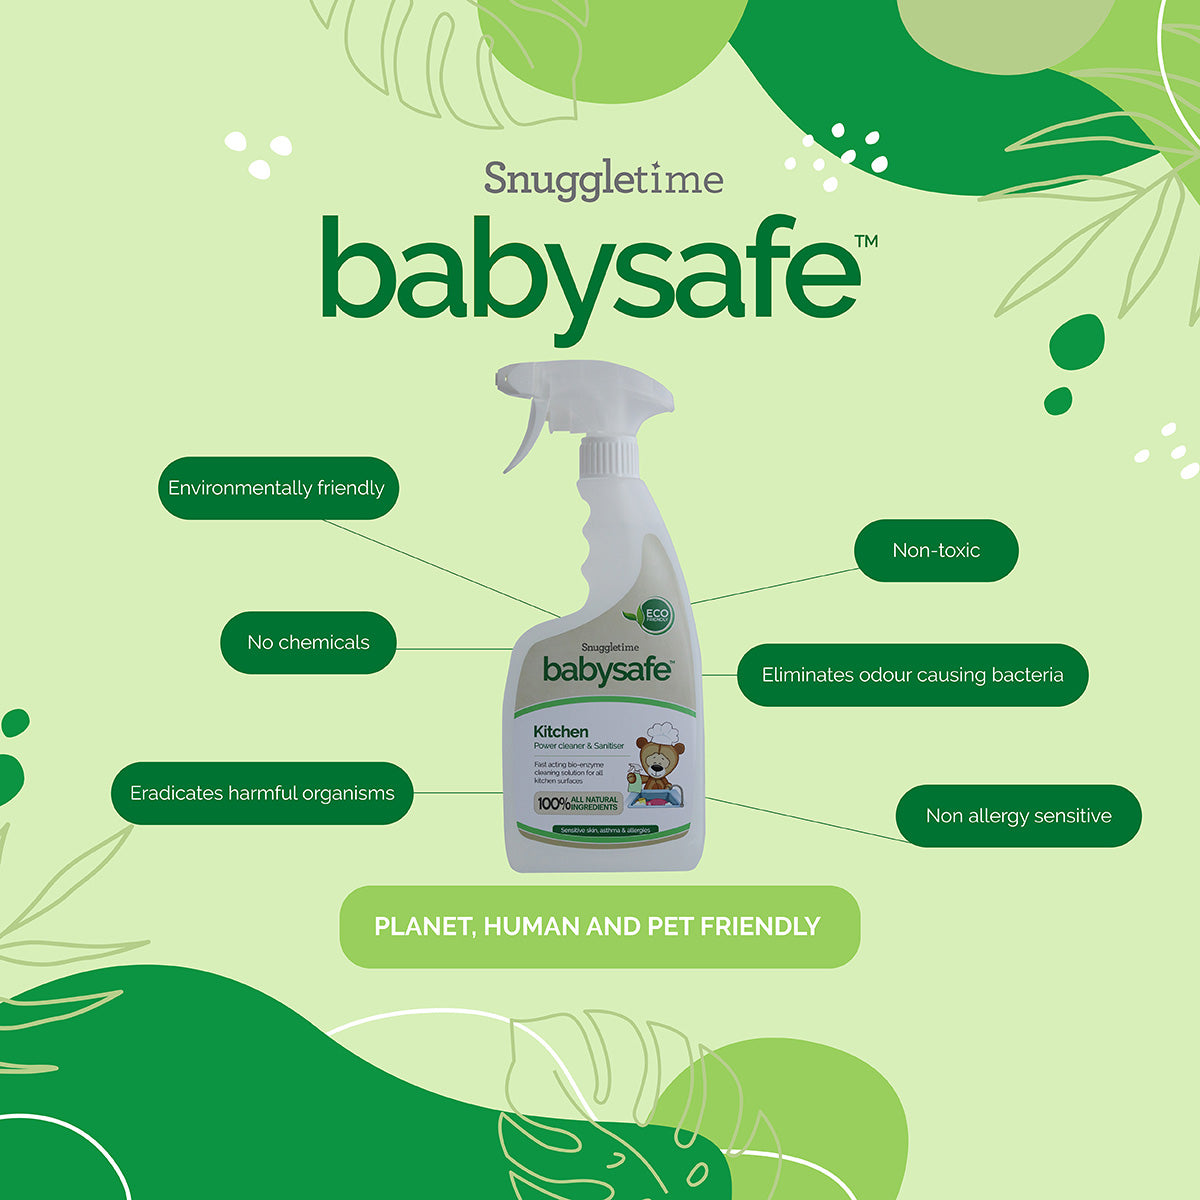 BabySafe Kitchen Power Cleaner & Sanitiser - 500ml